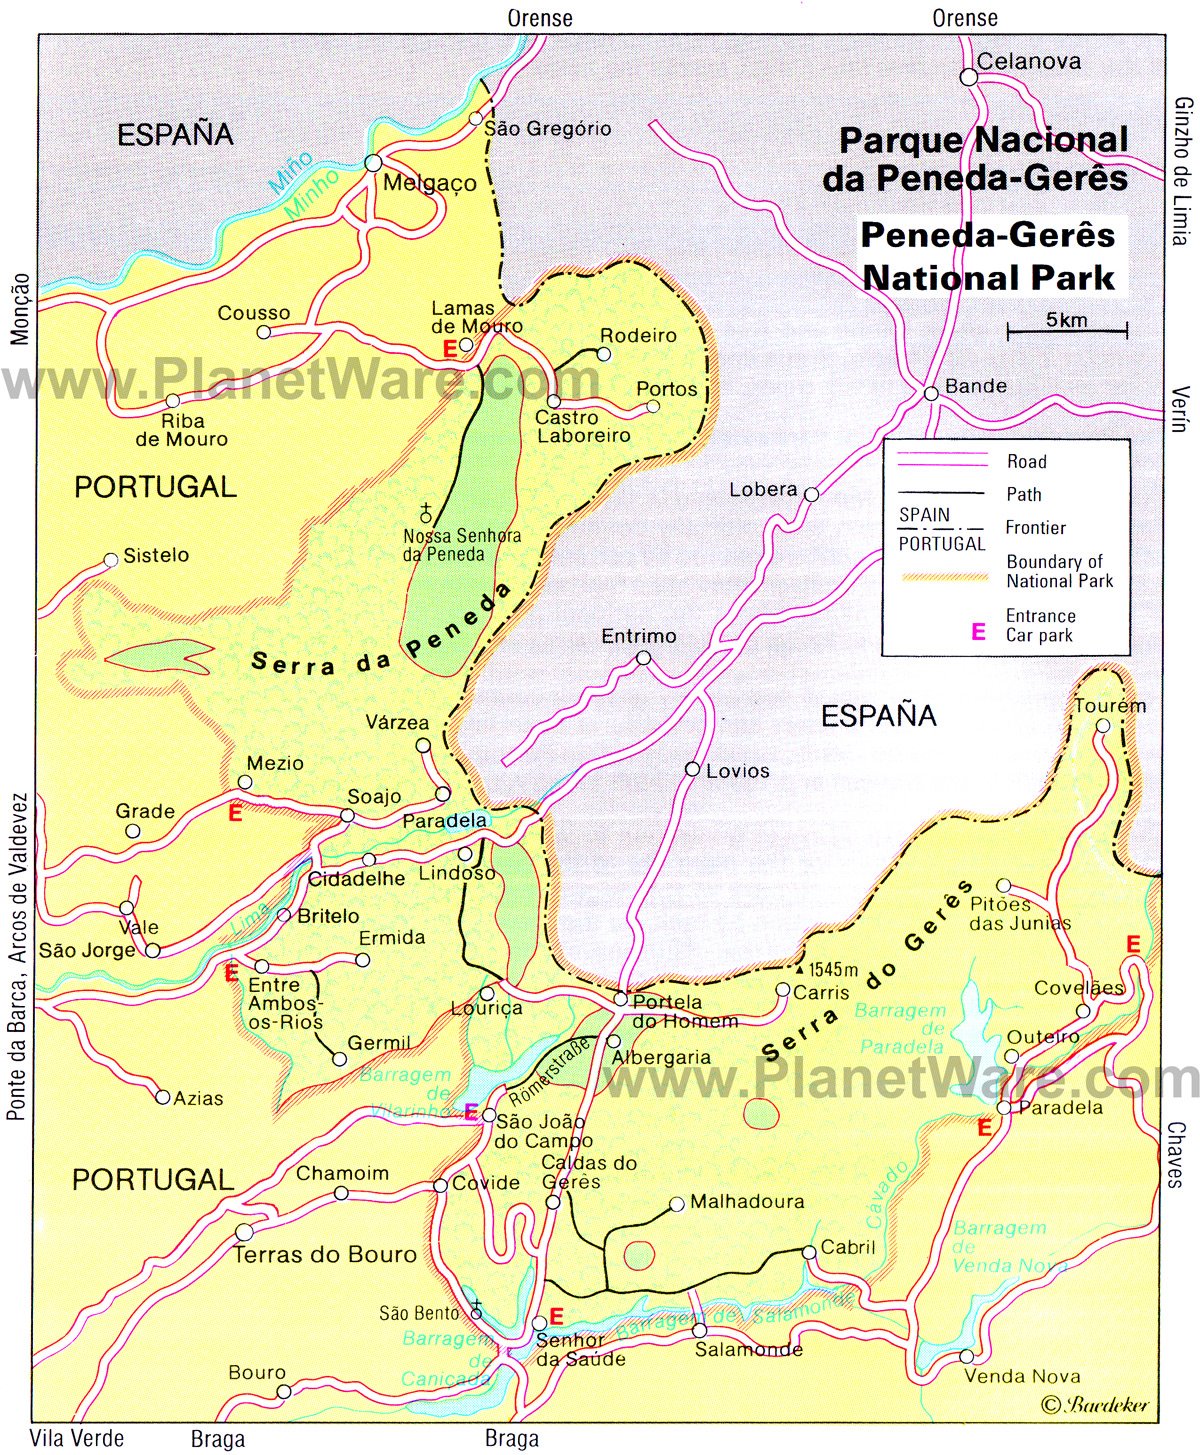 Parque Nacional da Peneda-Geres - Mapa de traçado